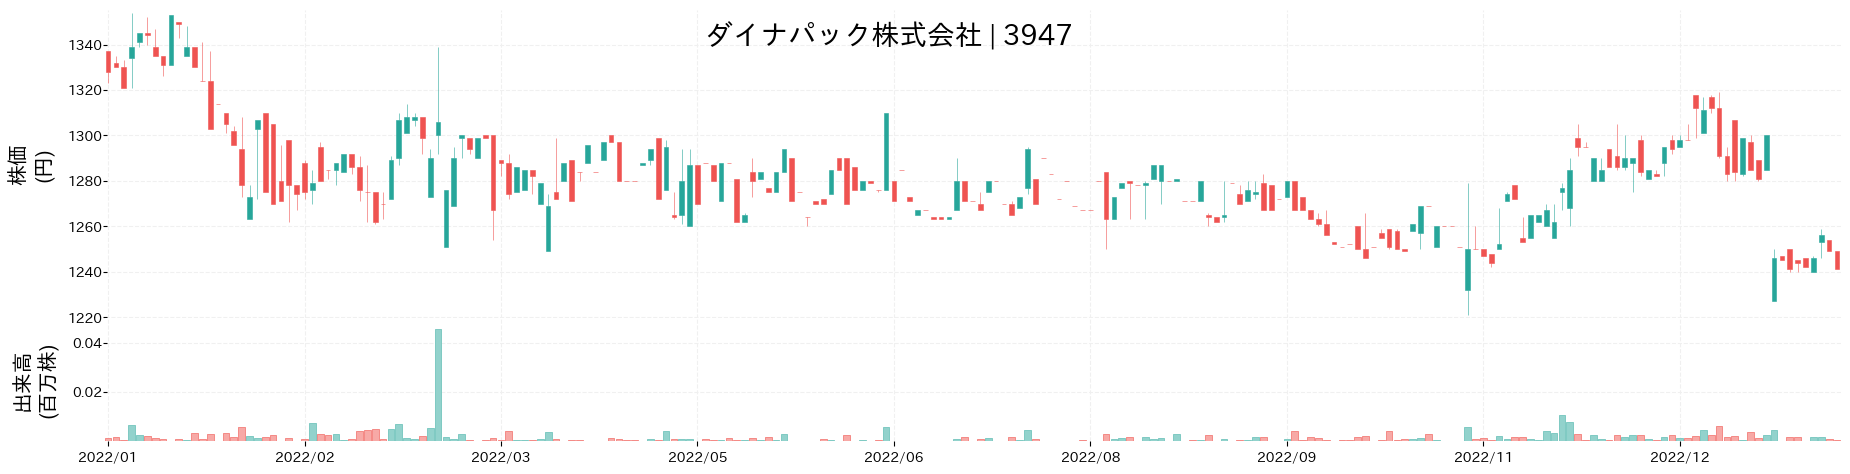 ダイナパックの株価推移(2022)